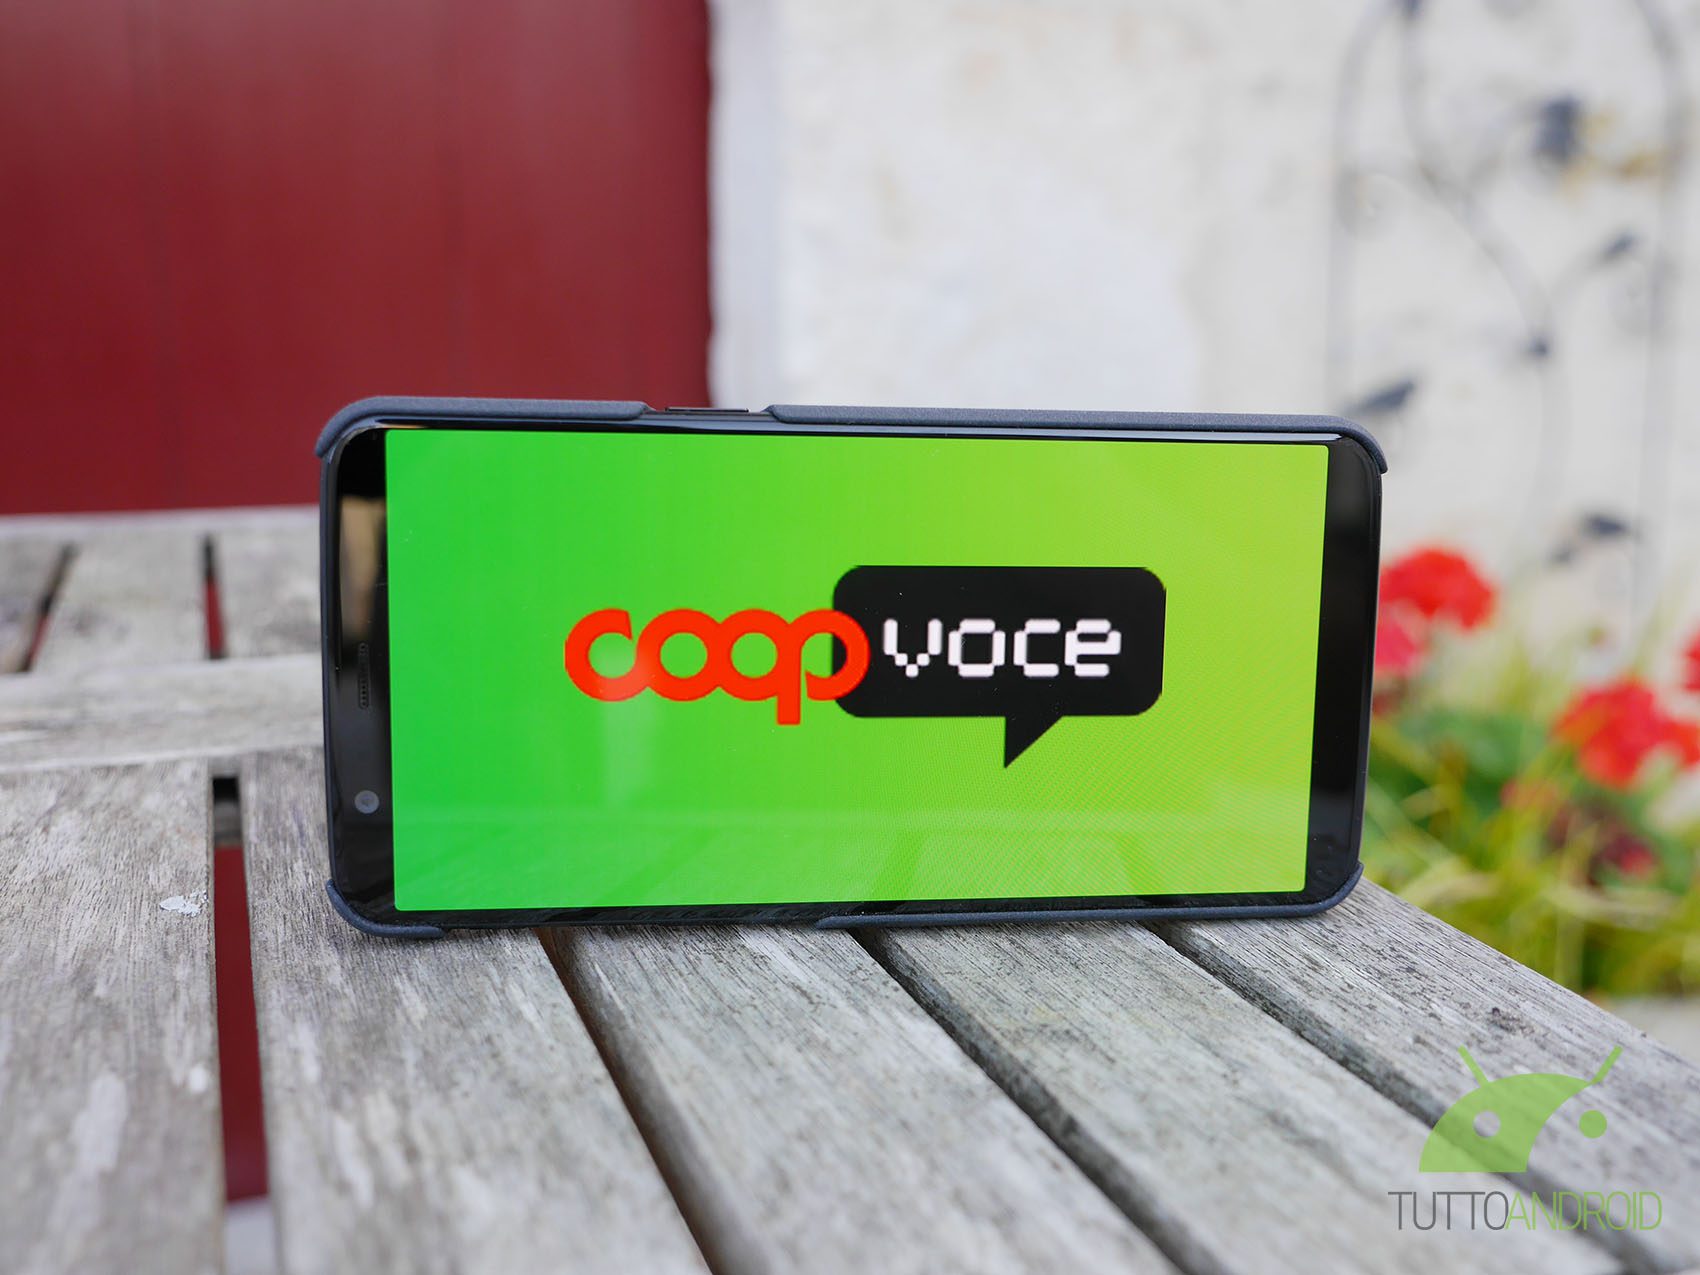 20 يورو من حركة الهاتف كهدية مع CoopVoce ، إليك كيف ومتى 1